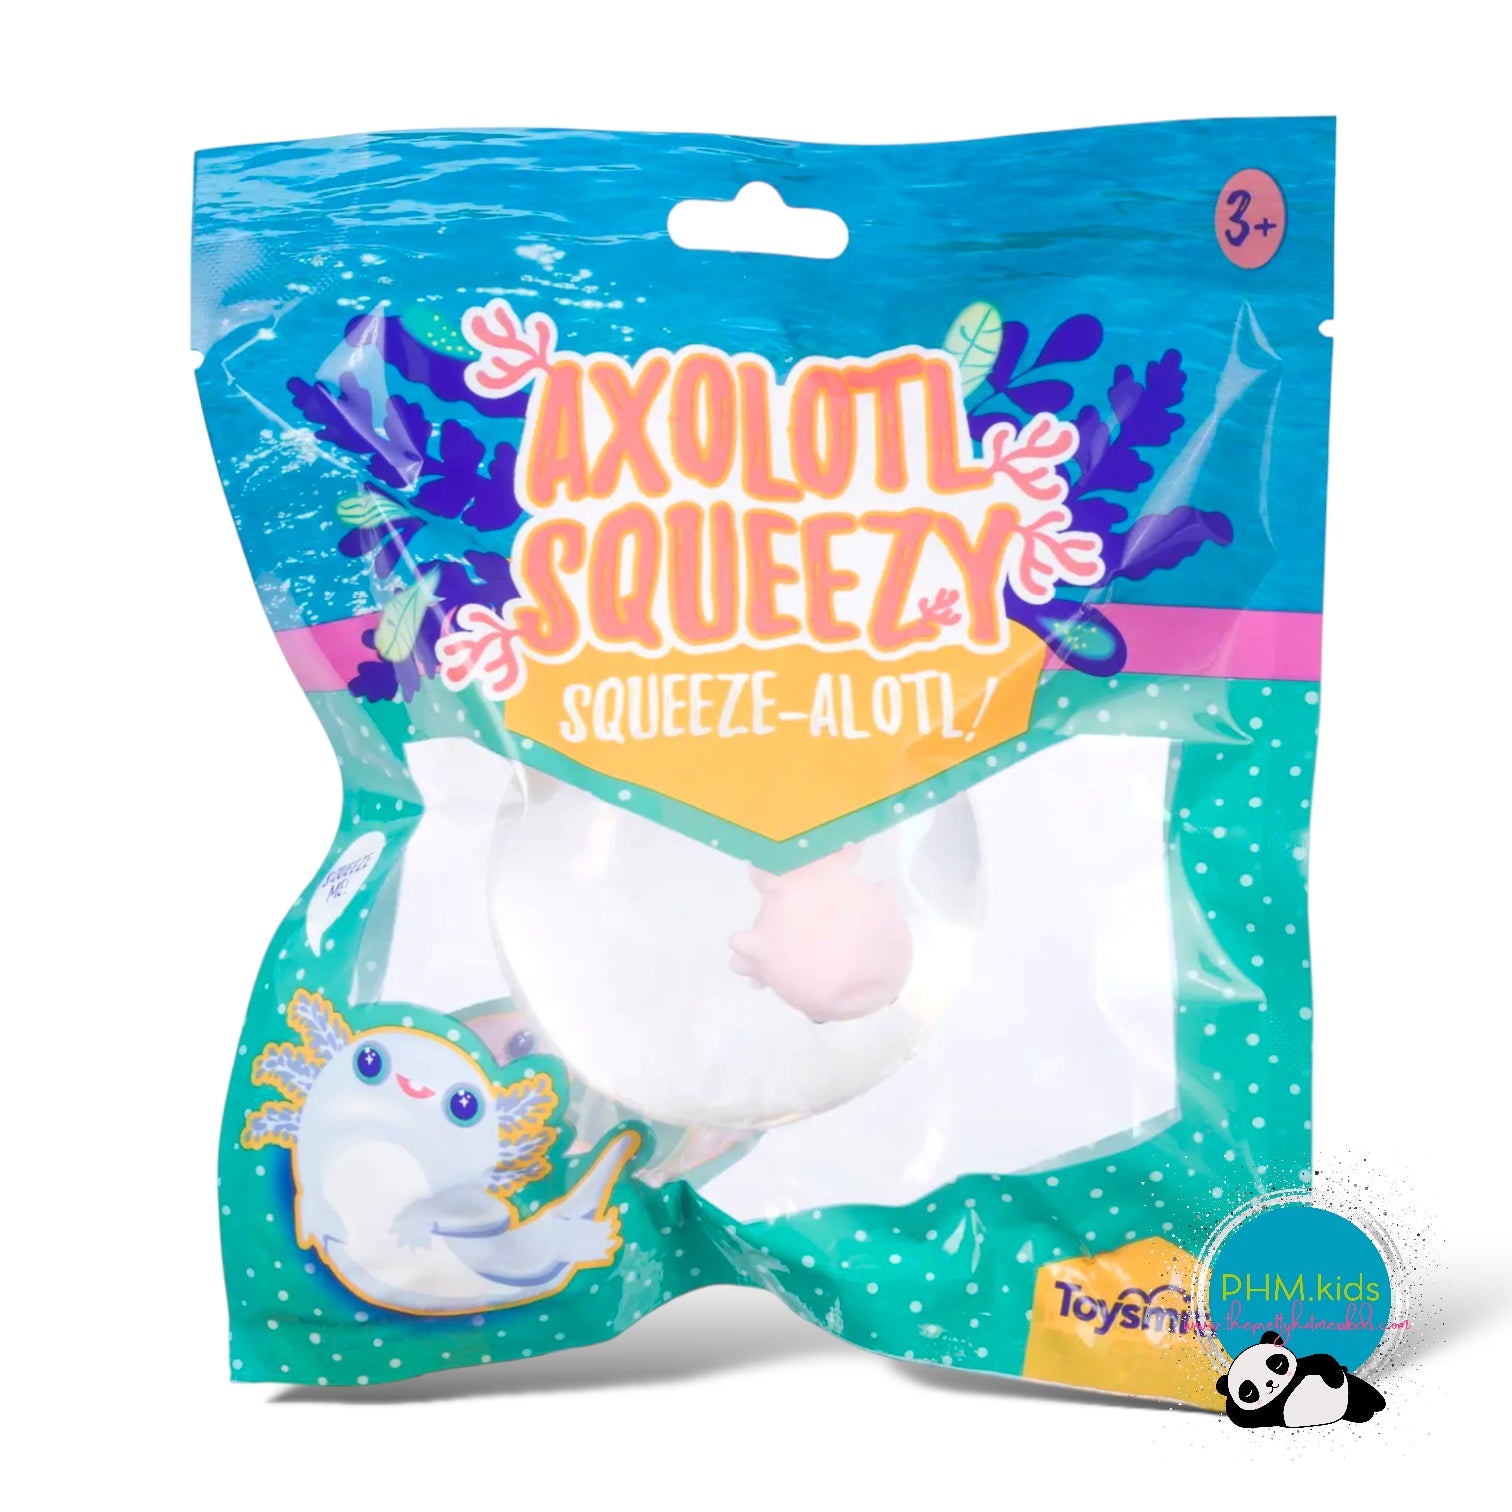 Axolotl Squeeze Ball ❤️